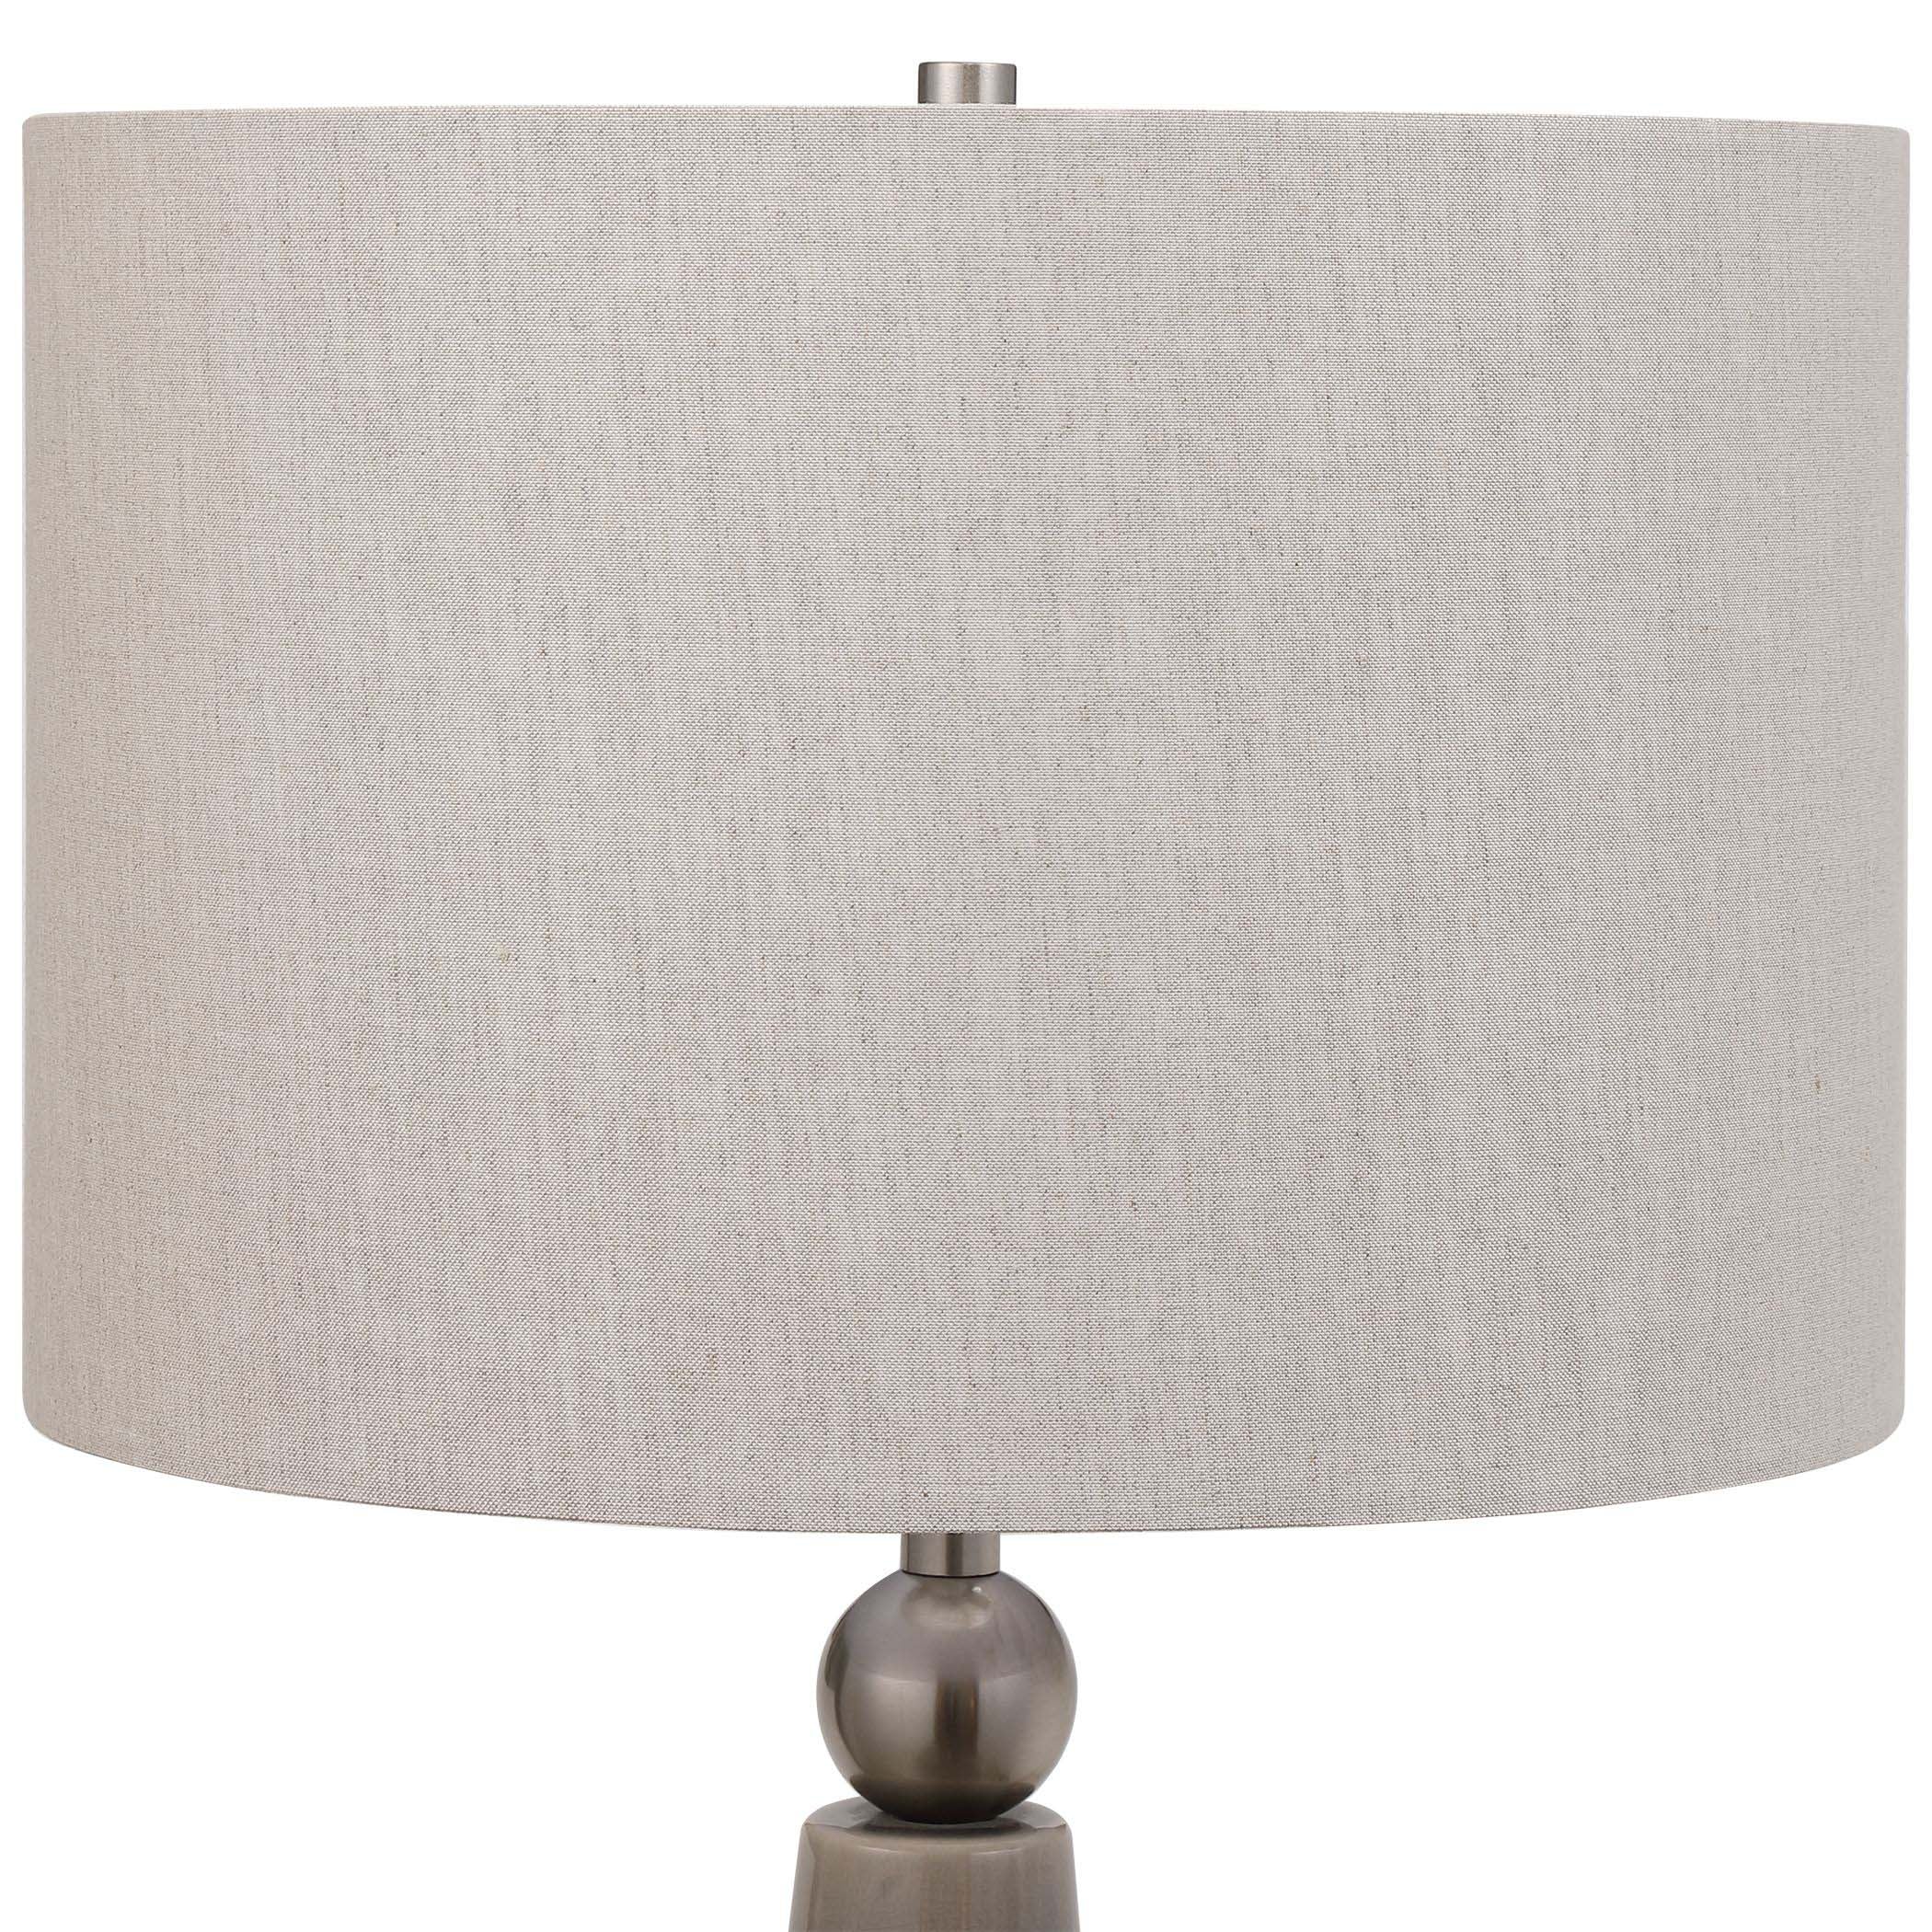 Decor Market Dove Gray Ceramic Table Lamp